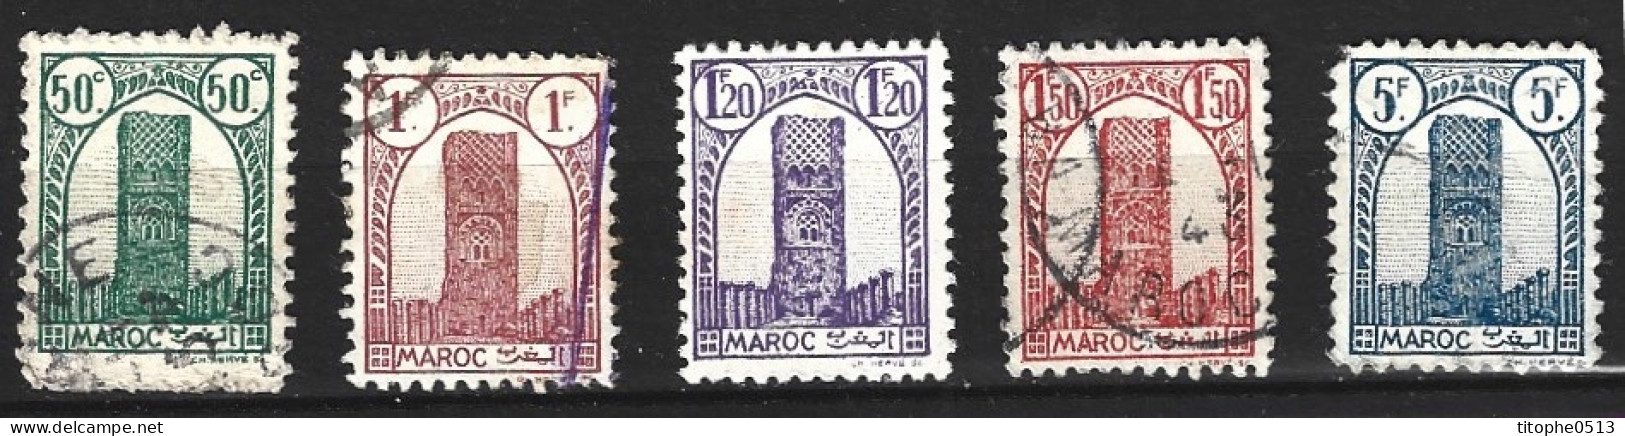 MAROC. Timbres Oblitérés De 1943-4. Tour Hassan. - Oblitérés